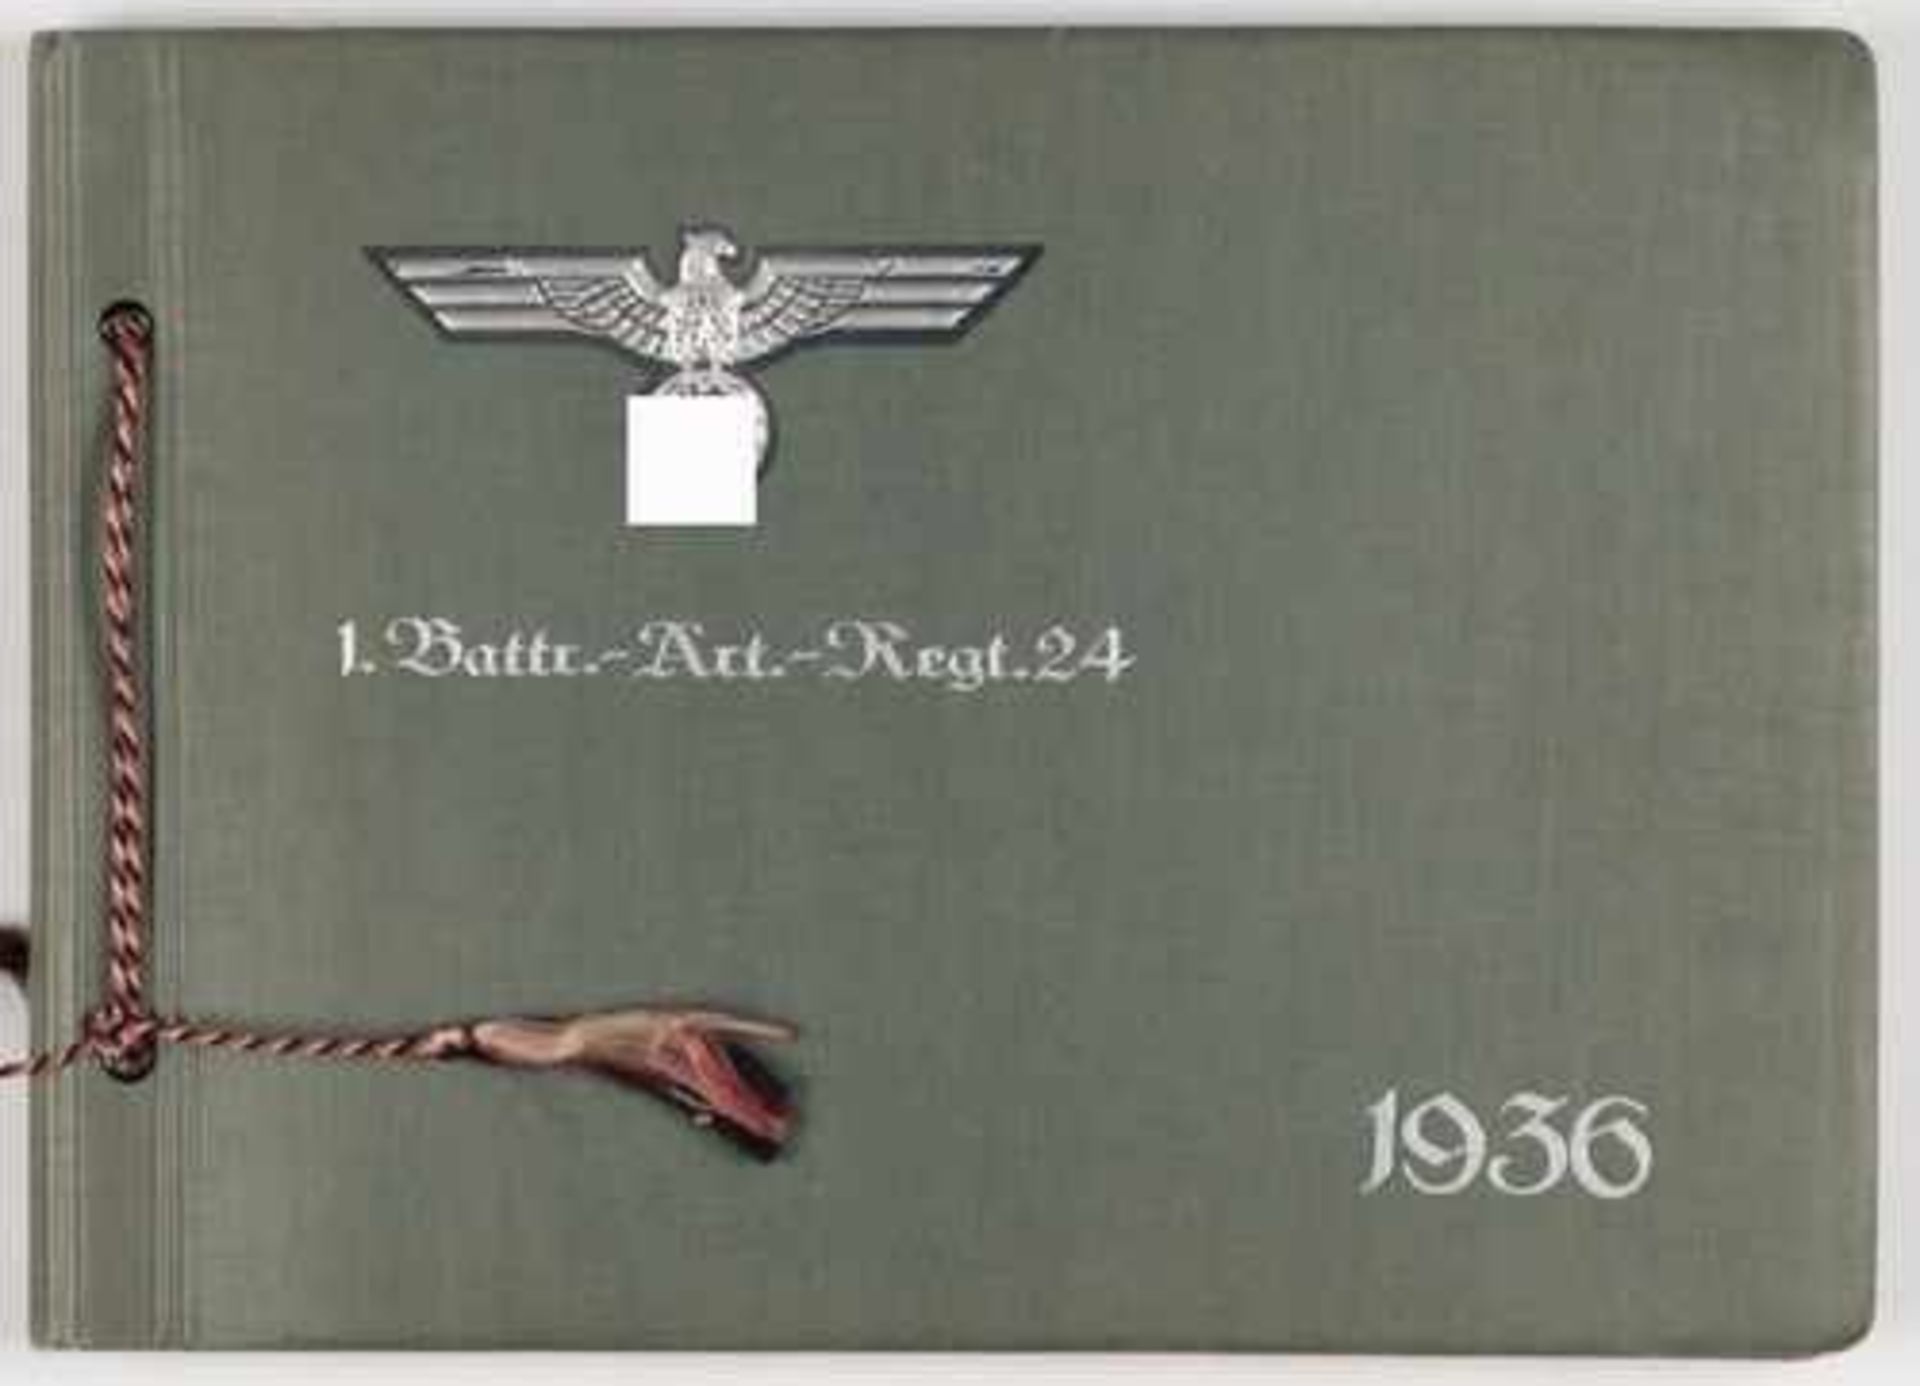 Fotoalbum - 3.Reich 1936-1946,dunkelgrünes Album, silbergeprägt, Aufdruck "1. Battr.-Art.-Regt.24